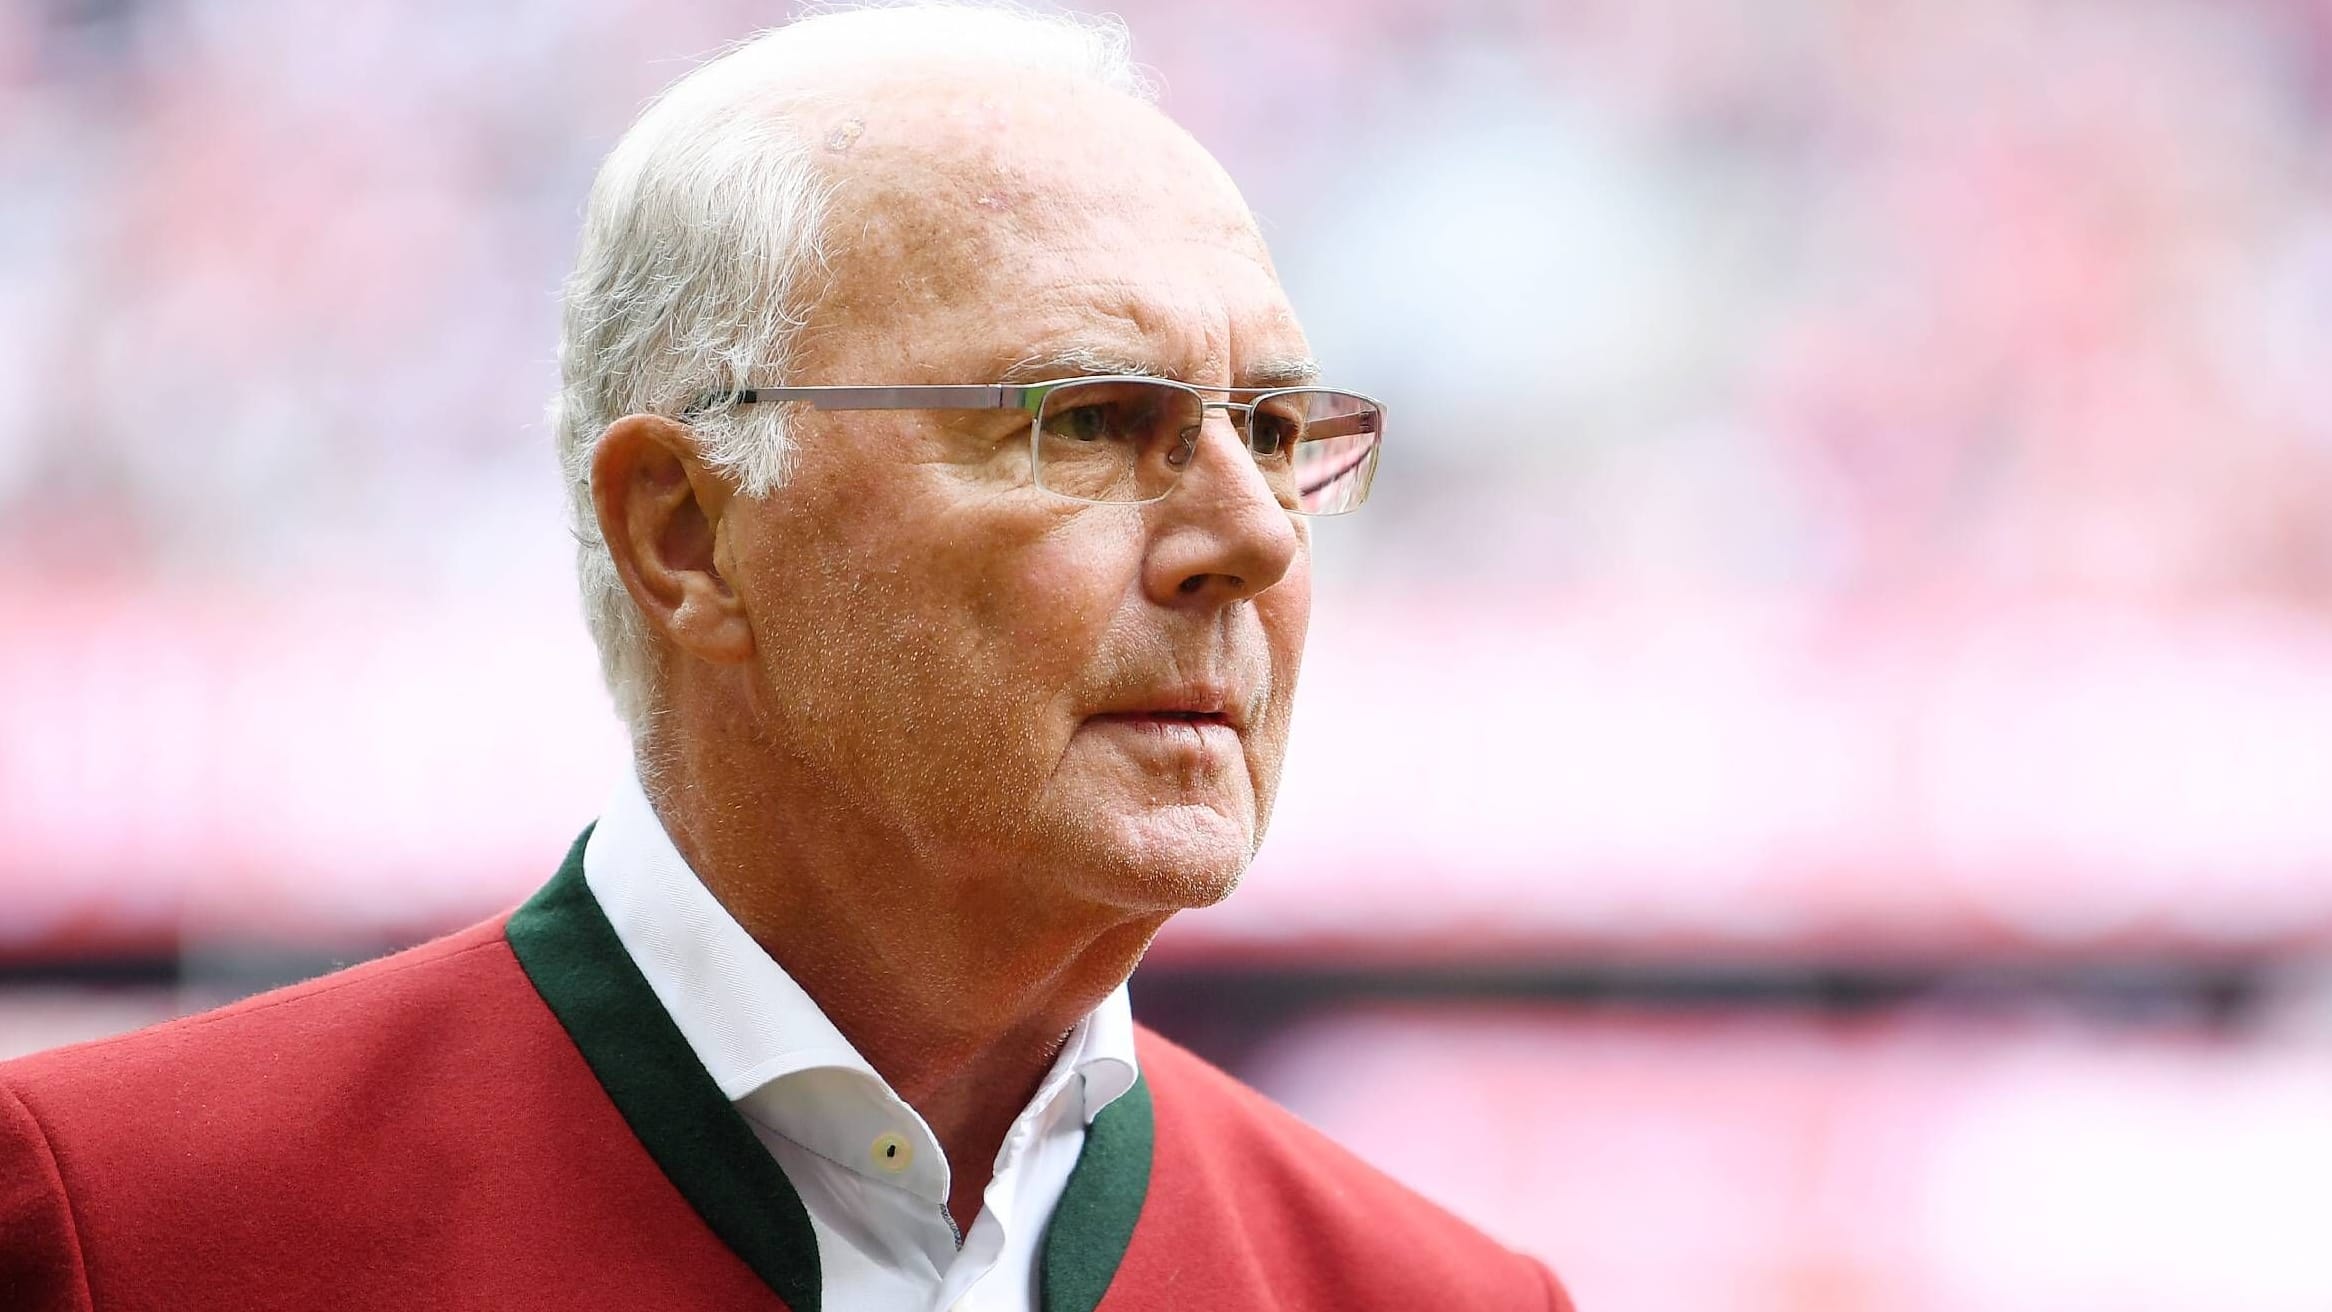 Gedenkfeier für Franz Beckenbauer: So läuft der Abschied vom 